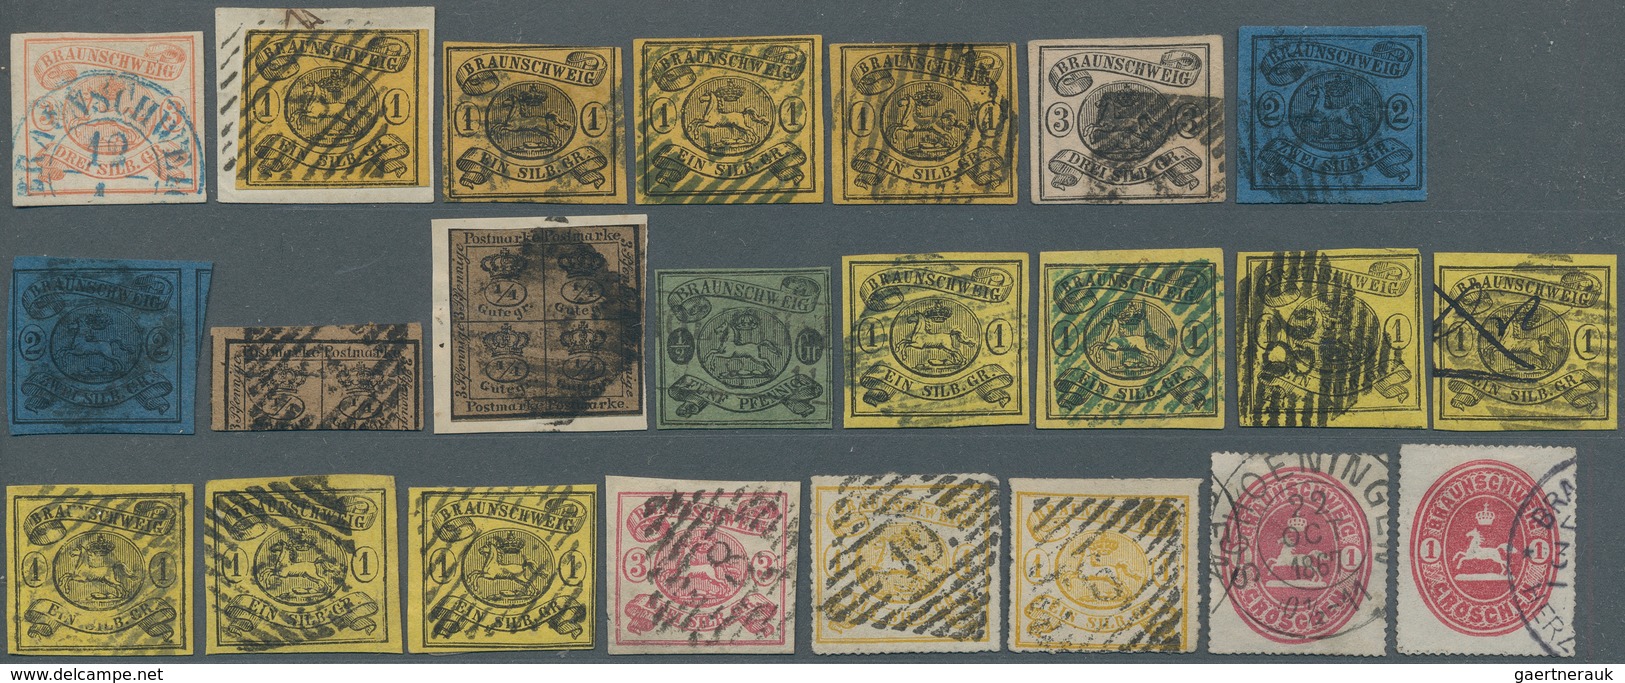 Braunschweig - Marken Und Briefe: 1852/1865, Sauber Gestempelte Sammlungapartie Von 23 Marken, Etwas - Braunschweig